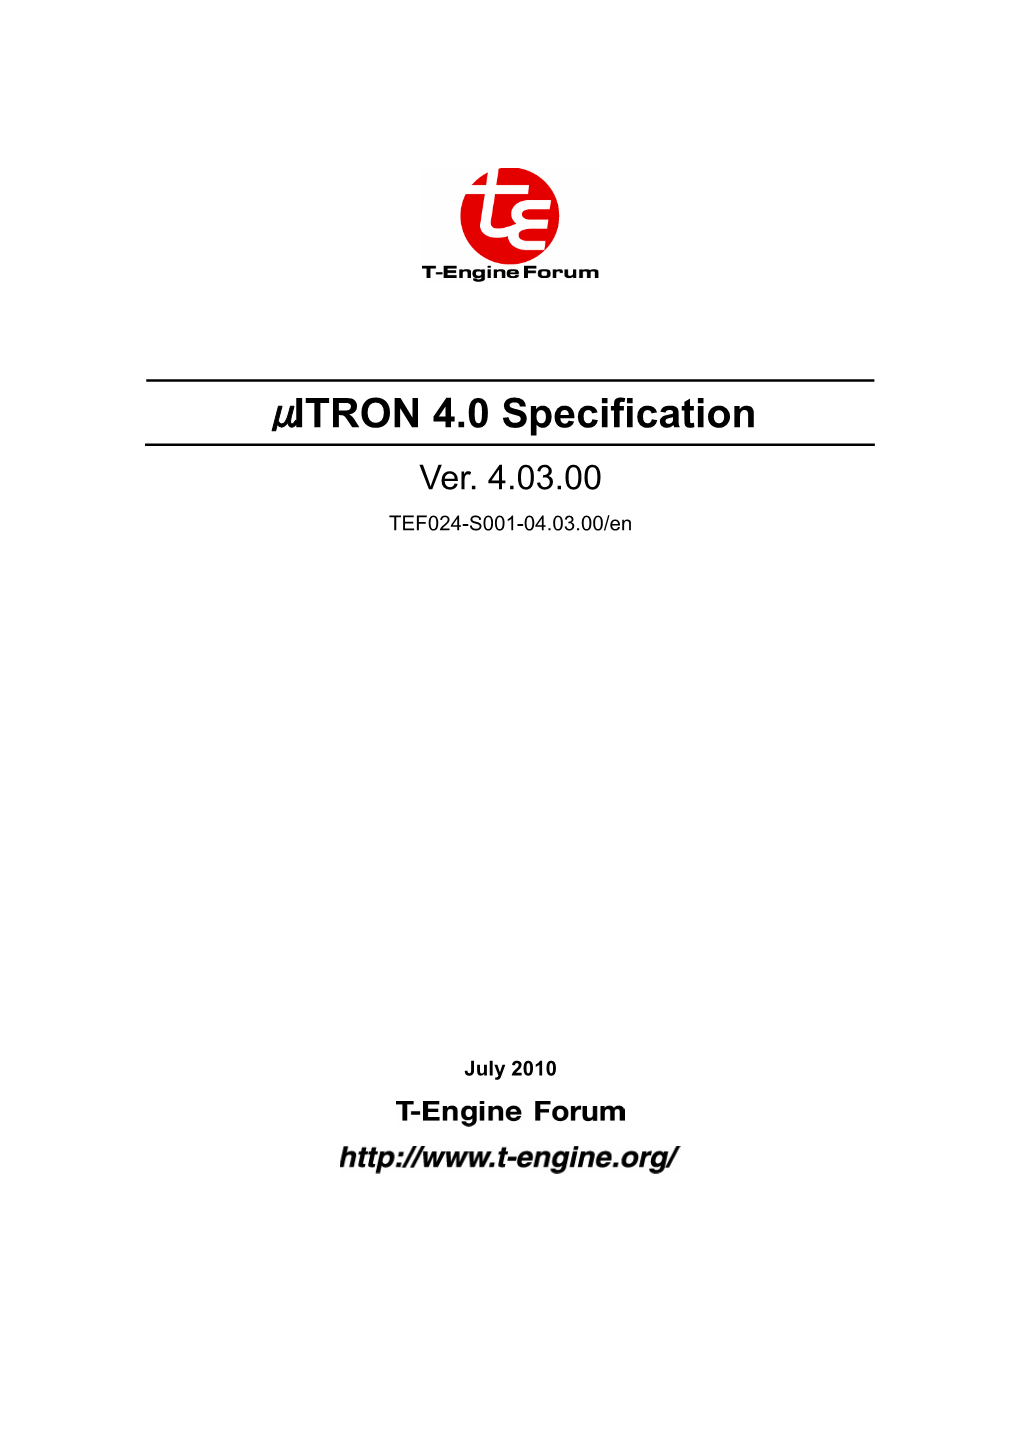 Μitron 4.0 Specification (Ver. 4.03.00) TEF024-S001-04.03.00/En July 2010 Copyright © 2010 by T-Engine Forum